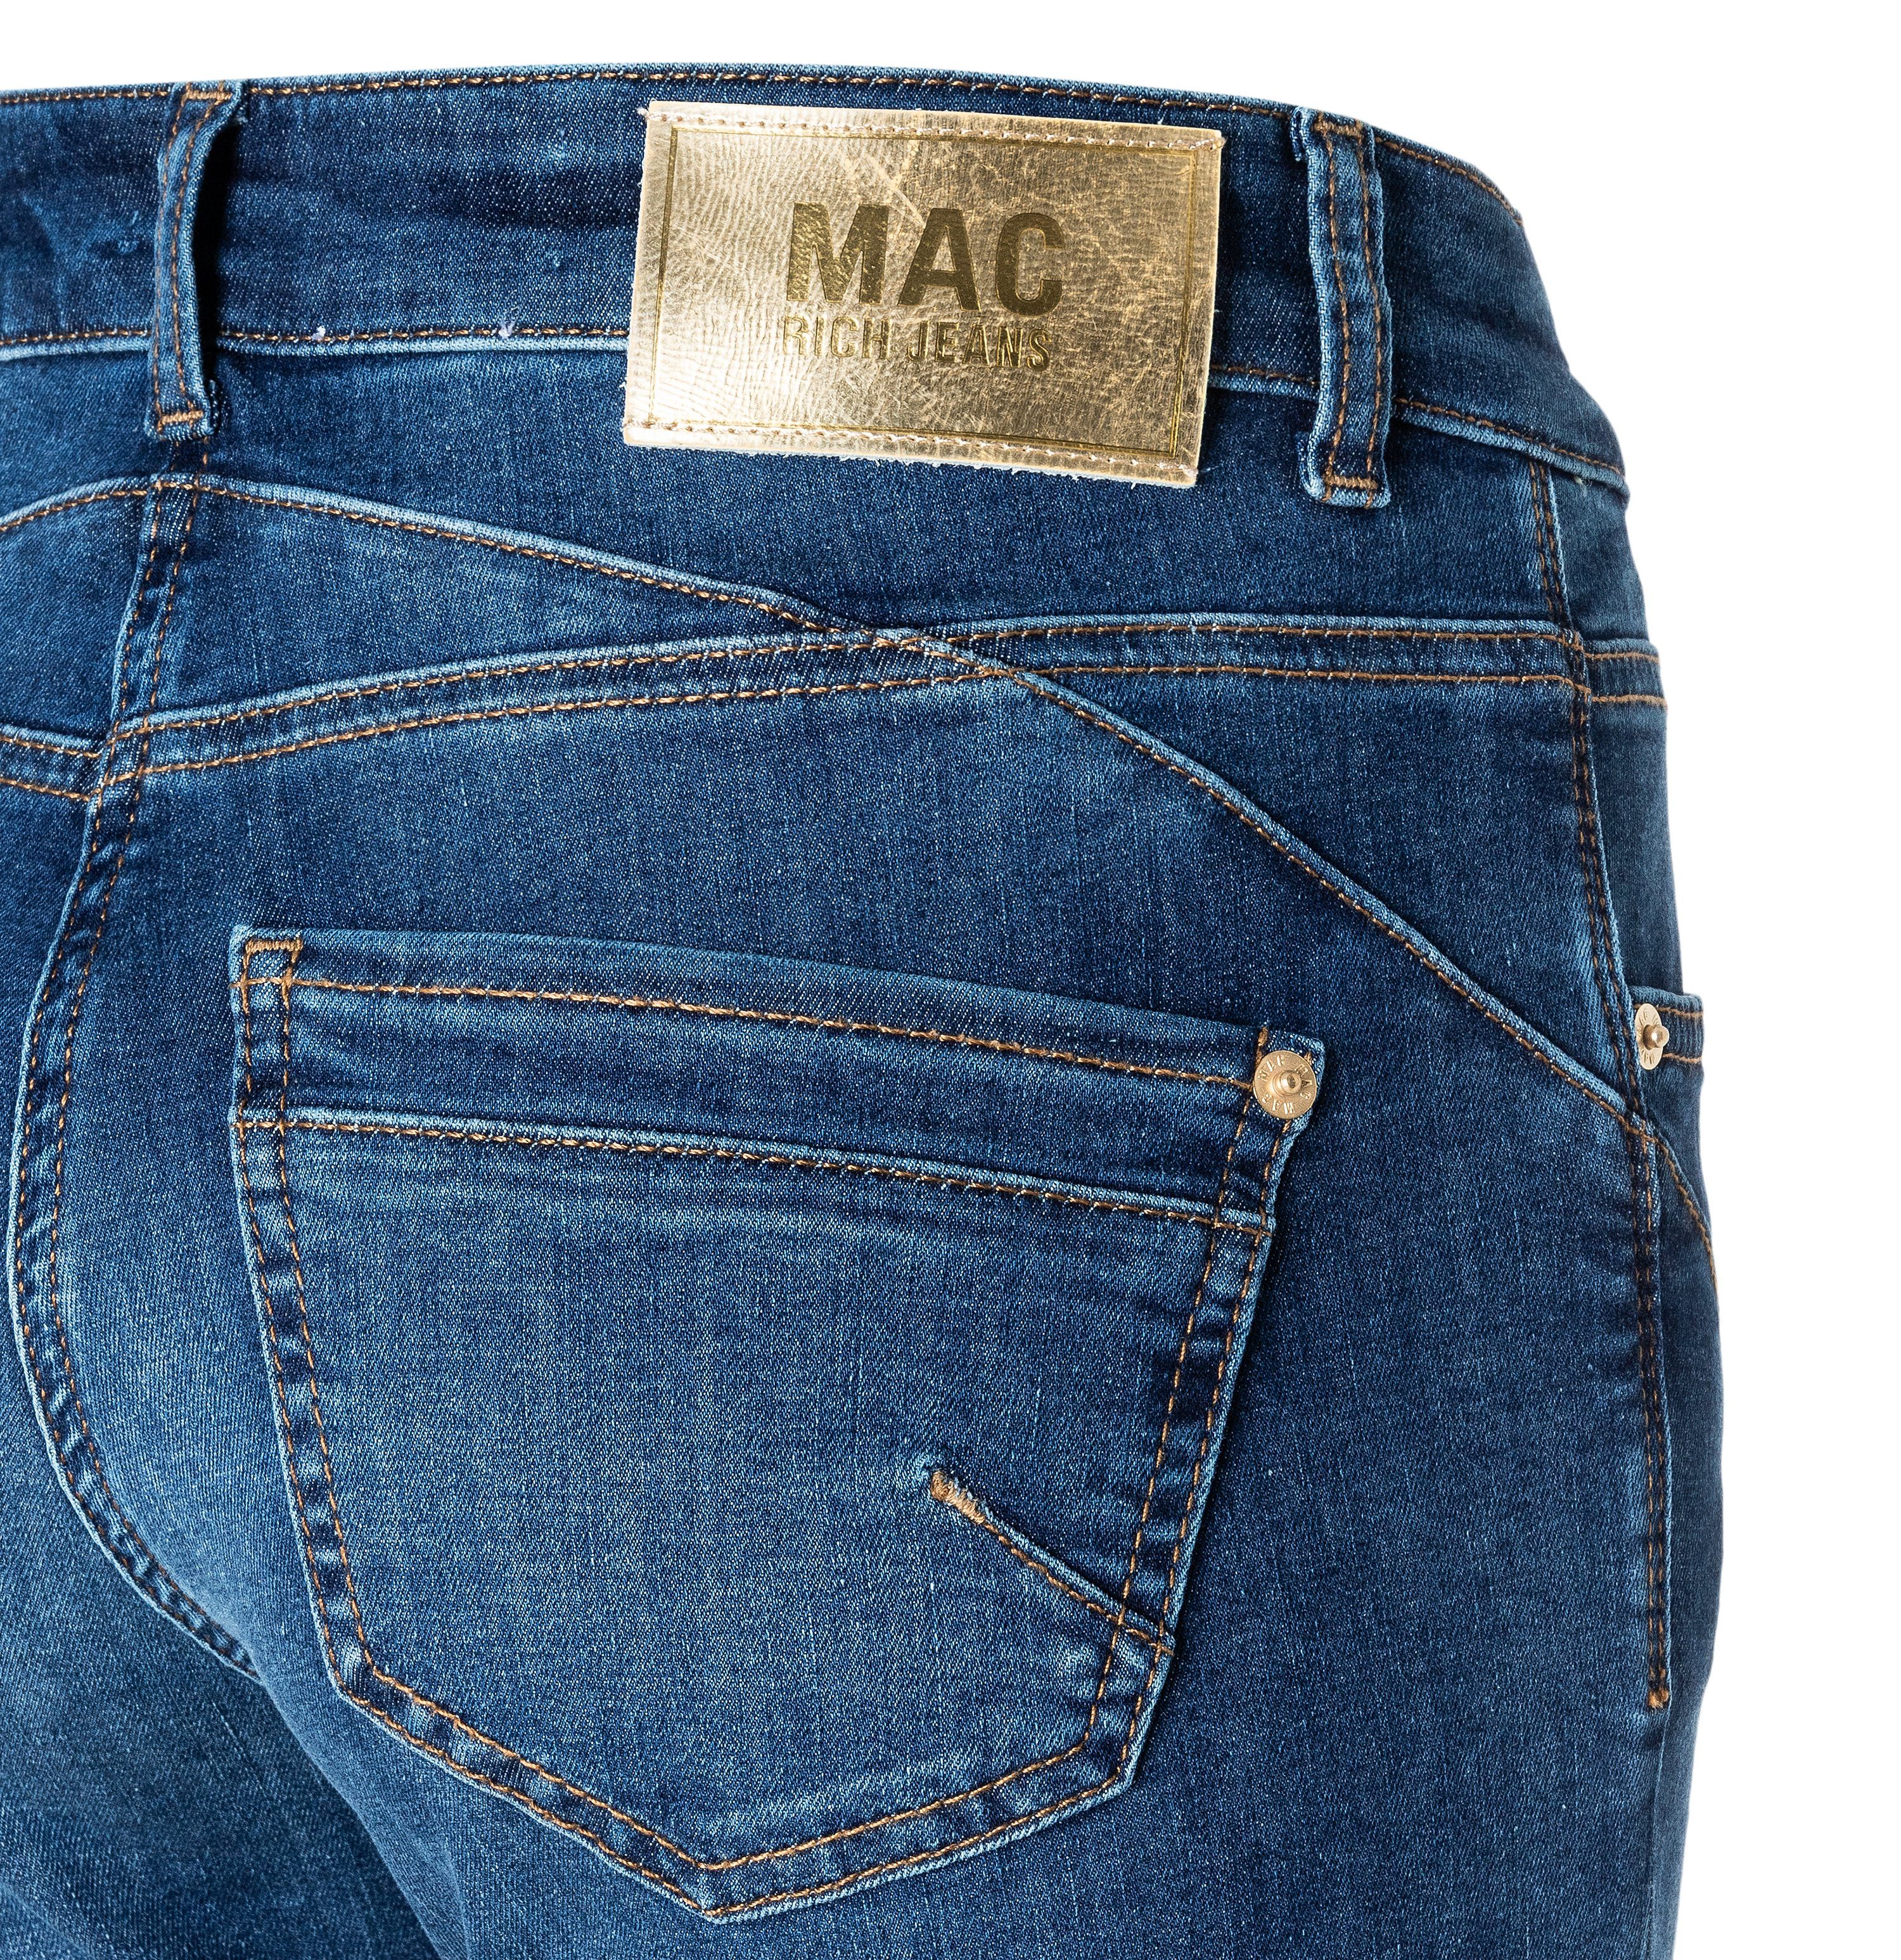 MAC Stretch-Jeans MAC RICH SLIM washed 5743-90-0387 fashion D620 blue